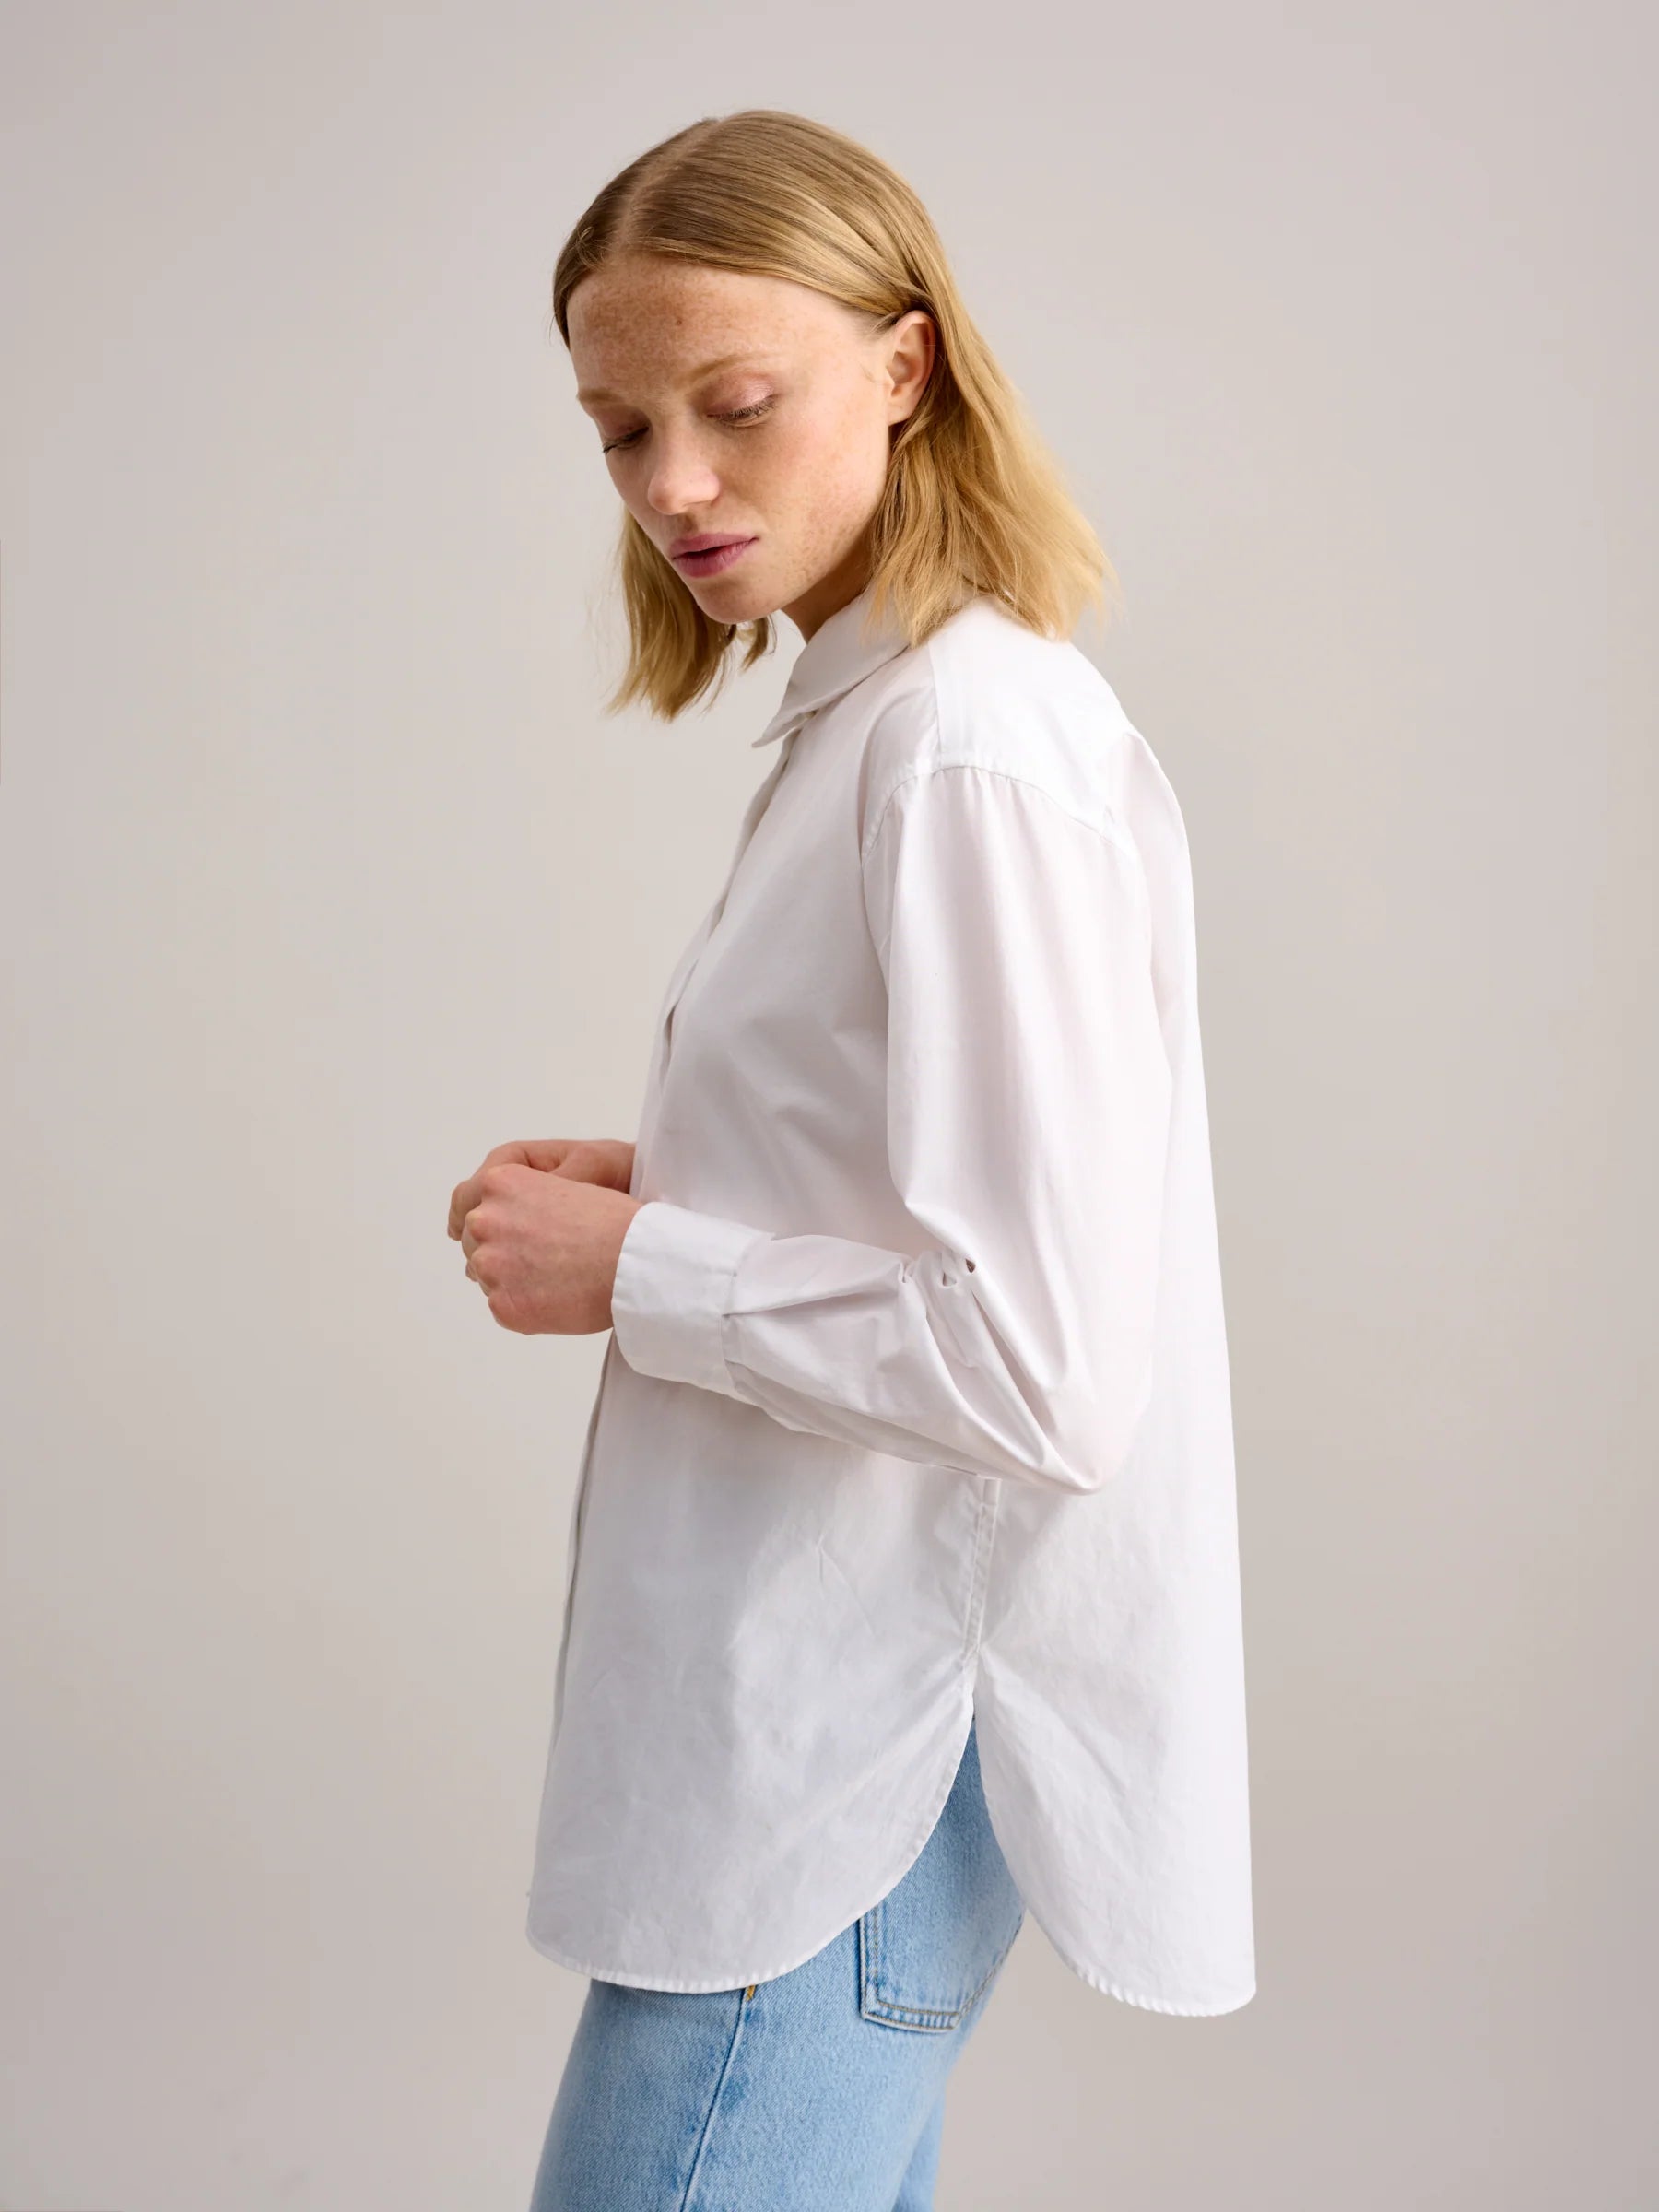 Bellerose Gastoo Shirt - White